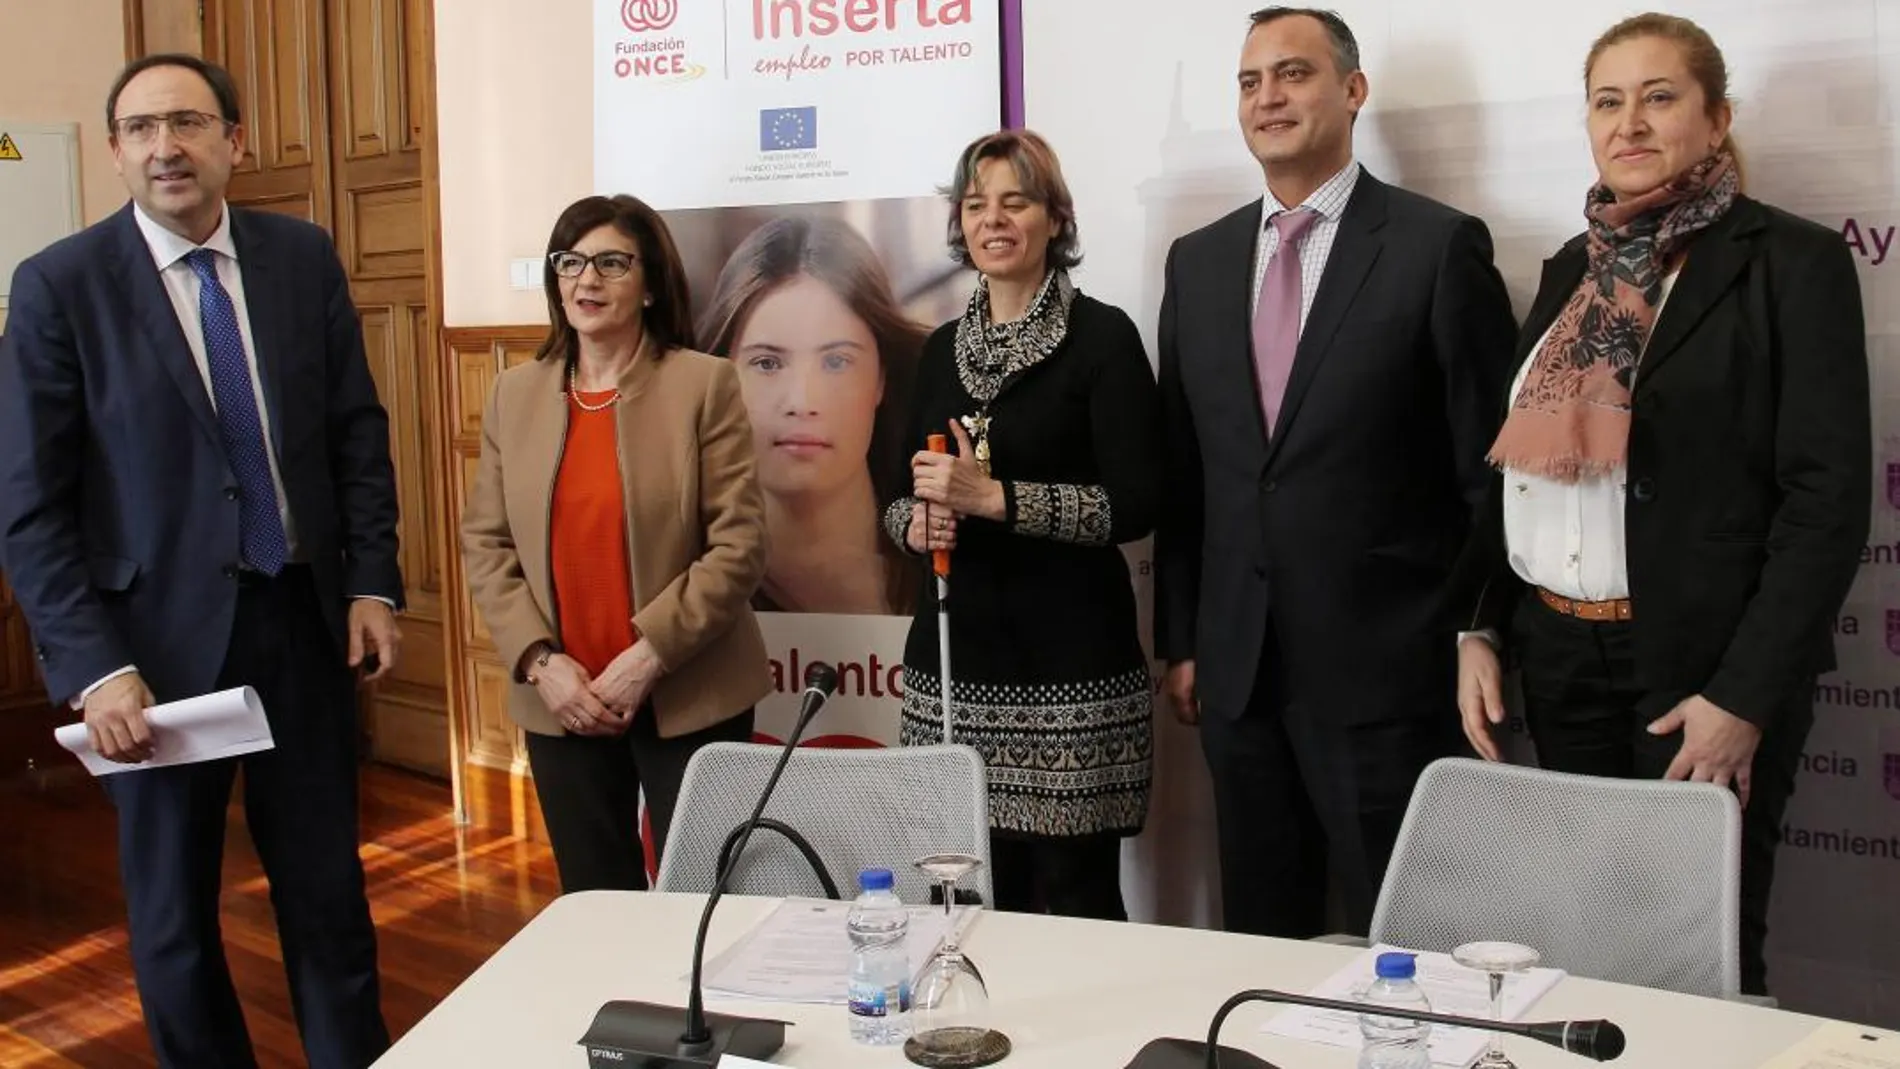 Alfonso Polanco, Begoña Grijalvo, Virginia Carcedo, Luis Ángel Pérez y Araceli de las Heras